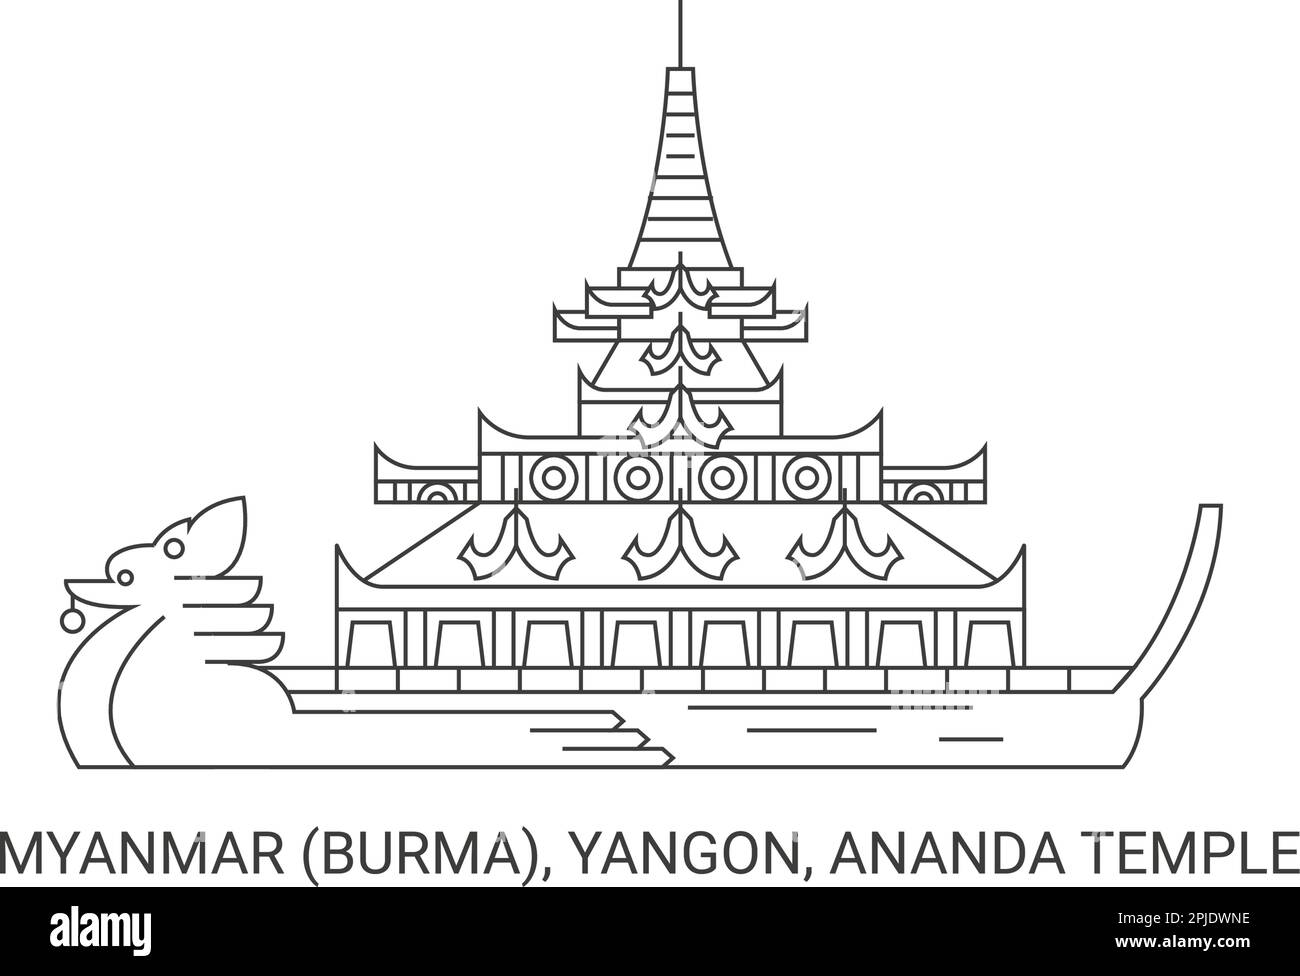 Myanmar Burma, Yangon, Ananda Temple, travel landmark vector illustration Stock Vector